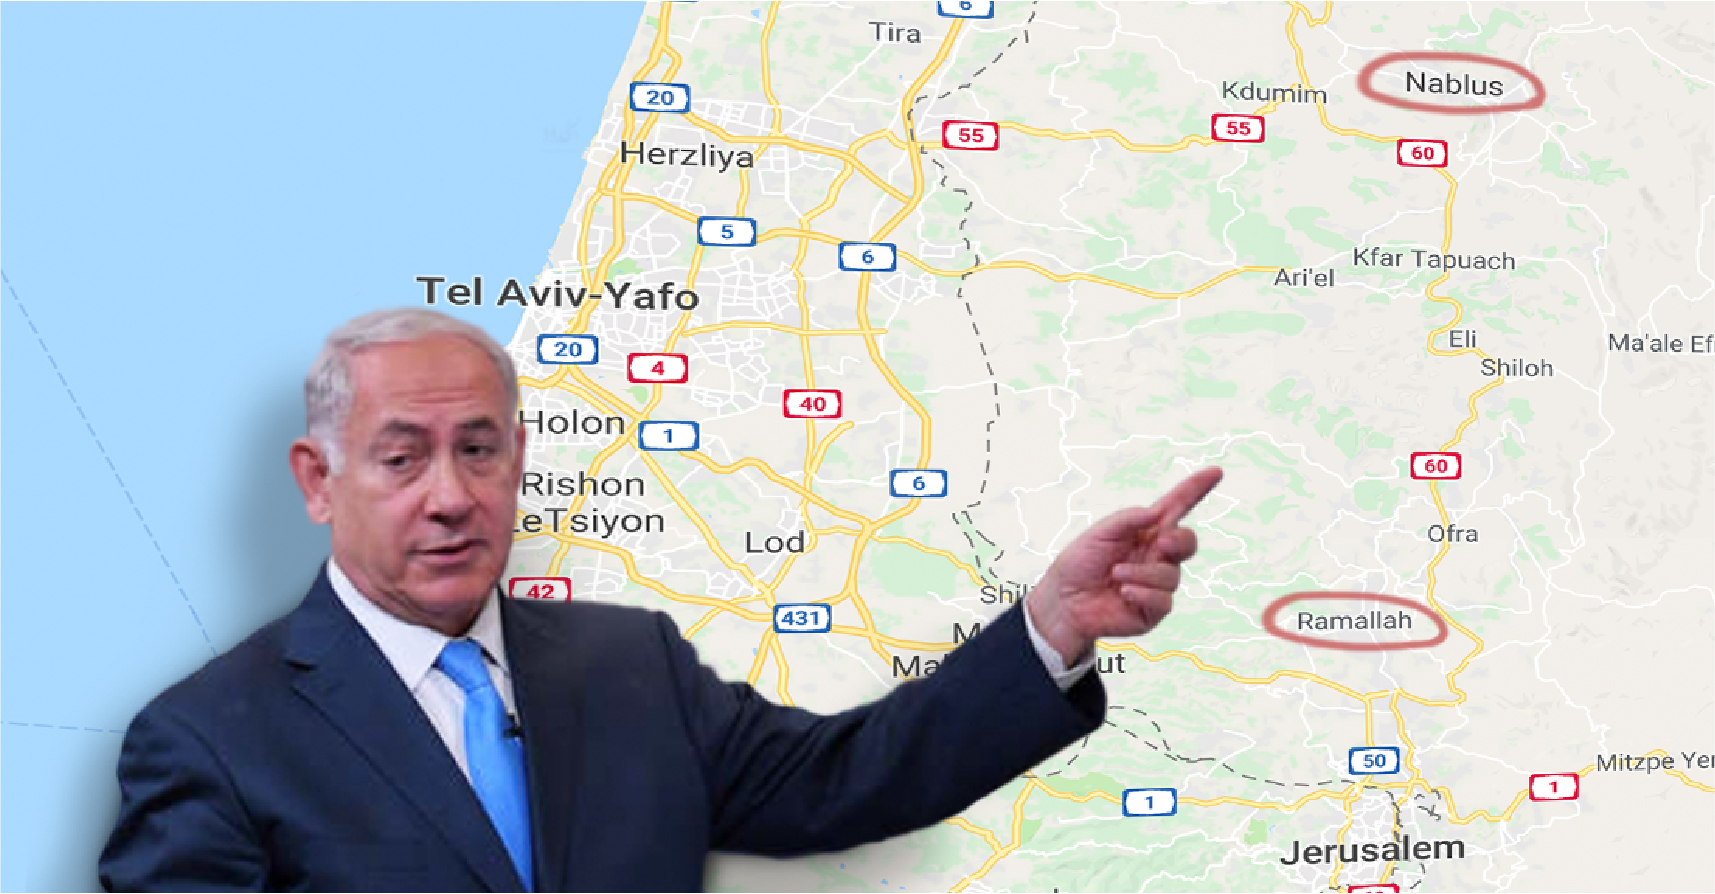 صورة نتنياهو: الخطوة القادمة هي الاعتراف برام الله و نابلس كعاصمتين إضافيتين لإسرائيل